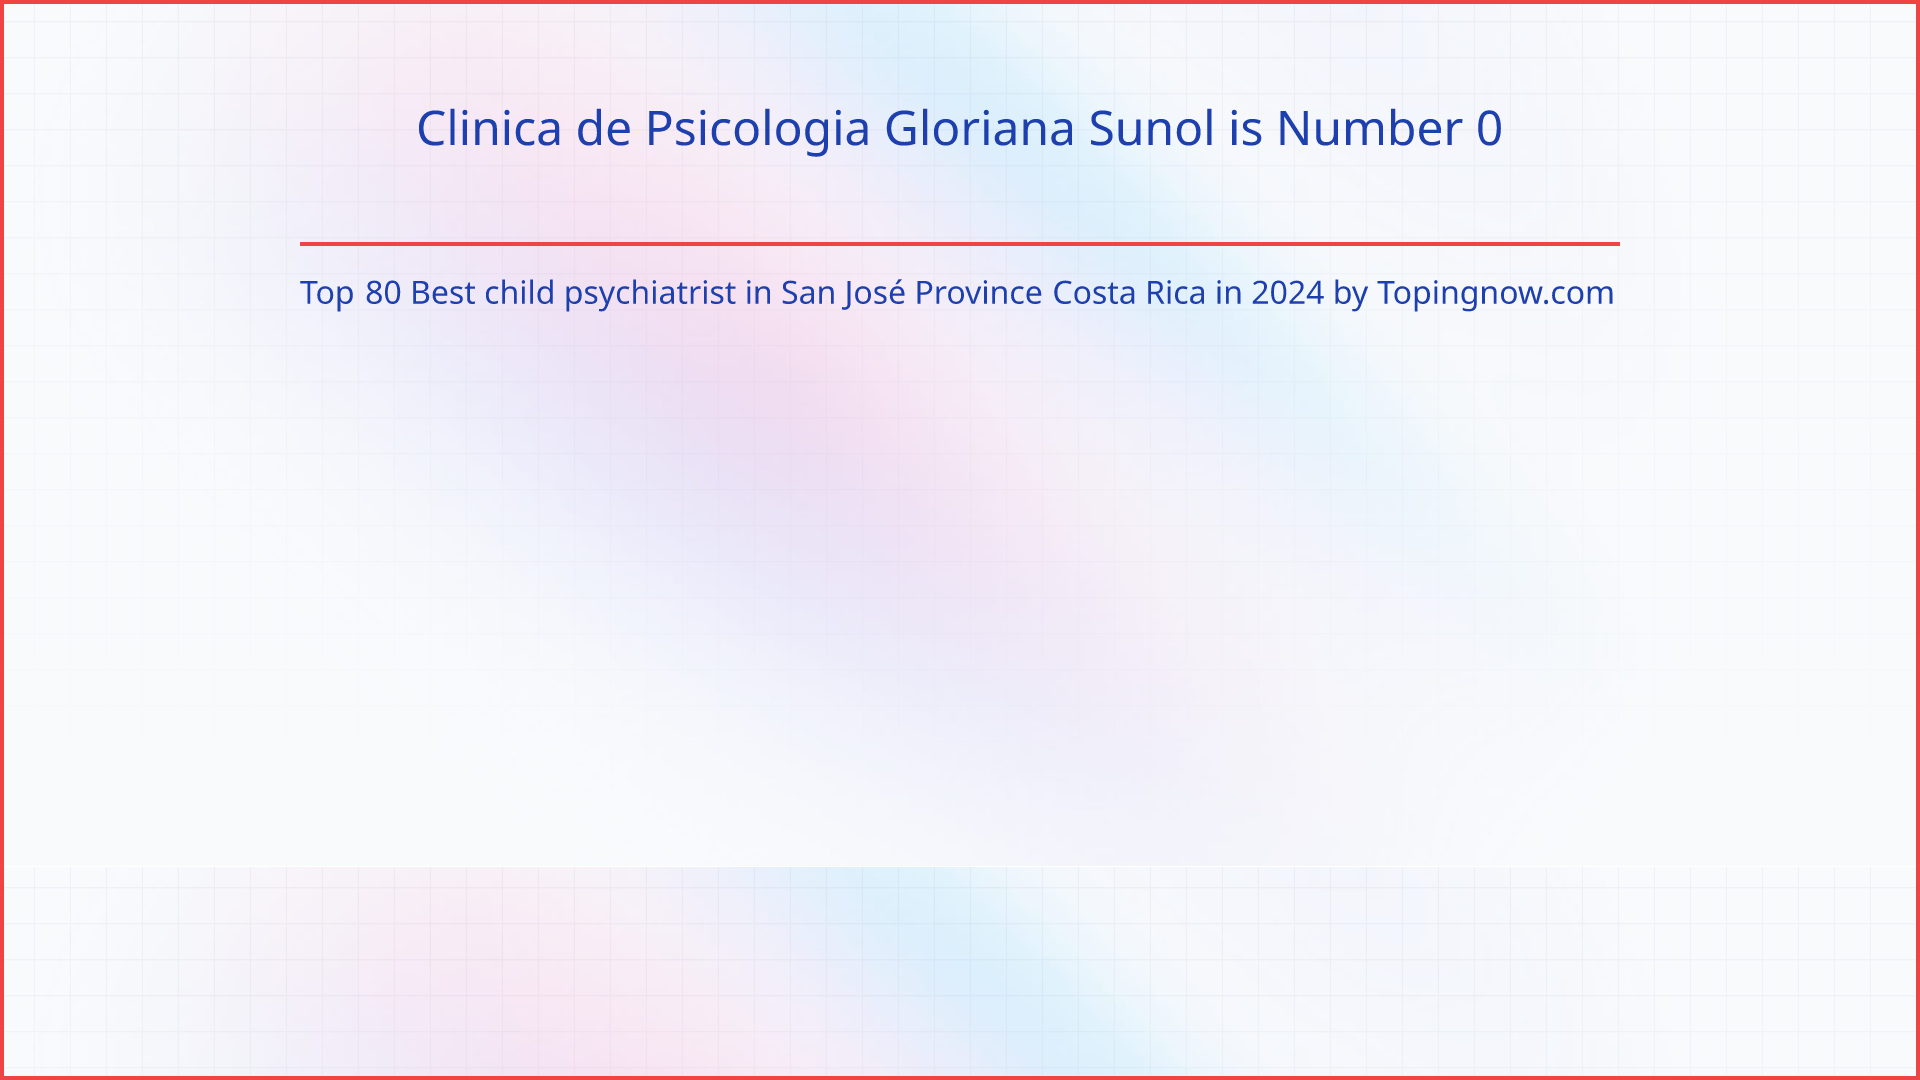 Clinica de Psicologia Gloriana Sunol: Top 80 Best child psychiatrist in San José Province Costa Rica in 2024